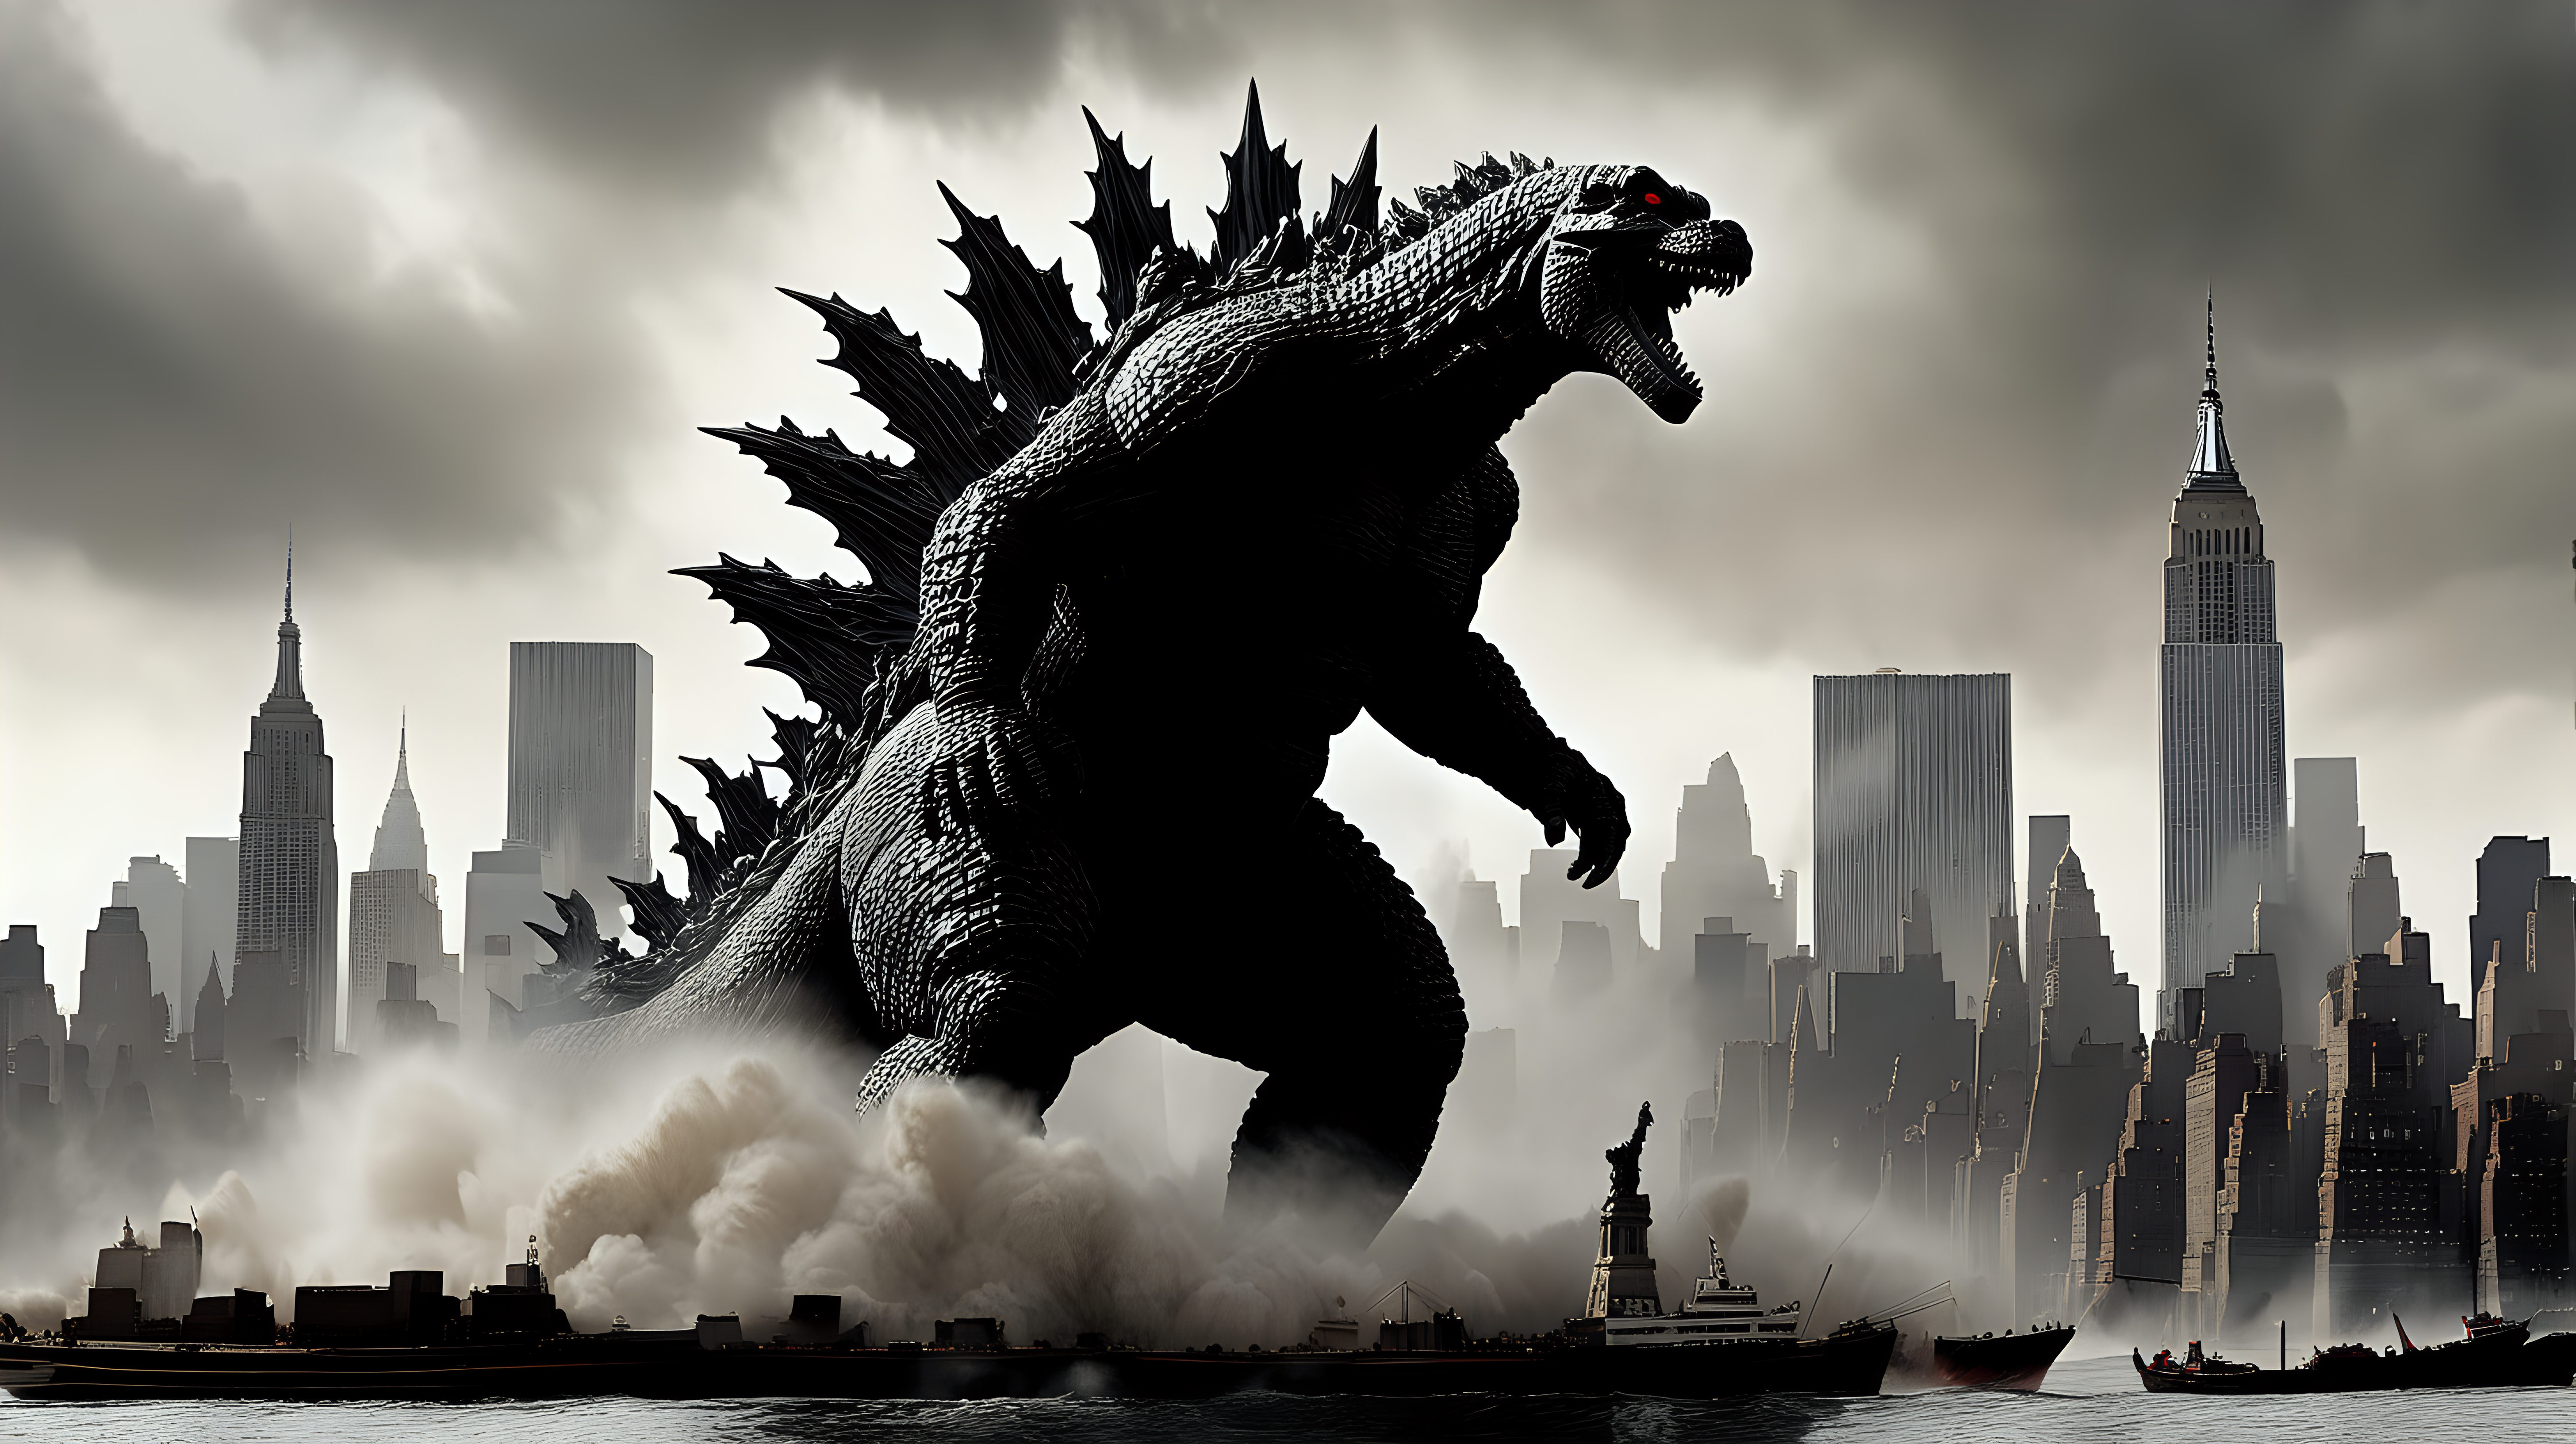 Godzilla destroying NYC